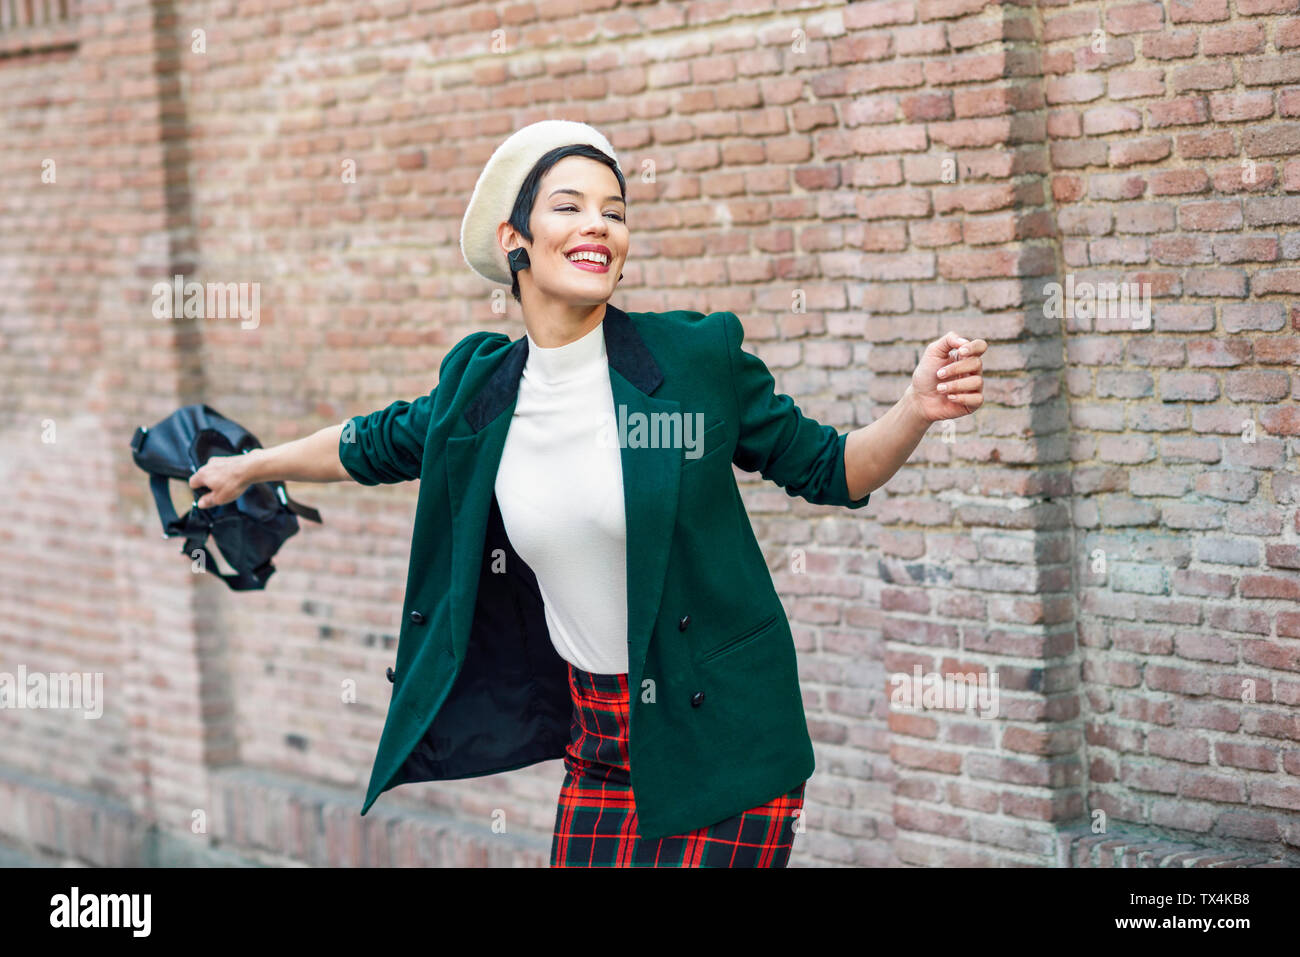 Felice di moda giovane donna che indossa un berretto e una giacca verde in corrispondenza di un muro di mattoni Foto Stock